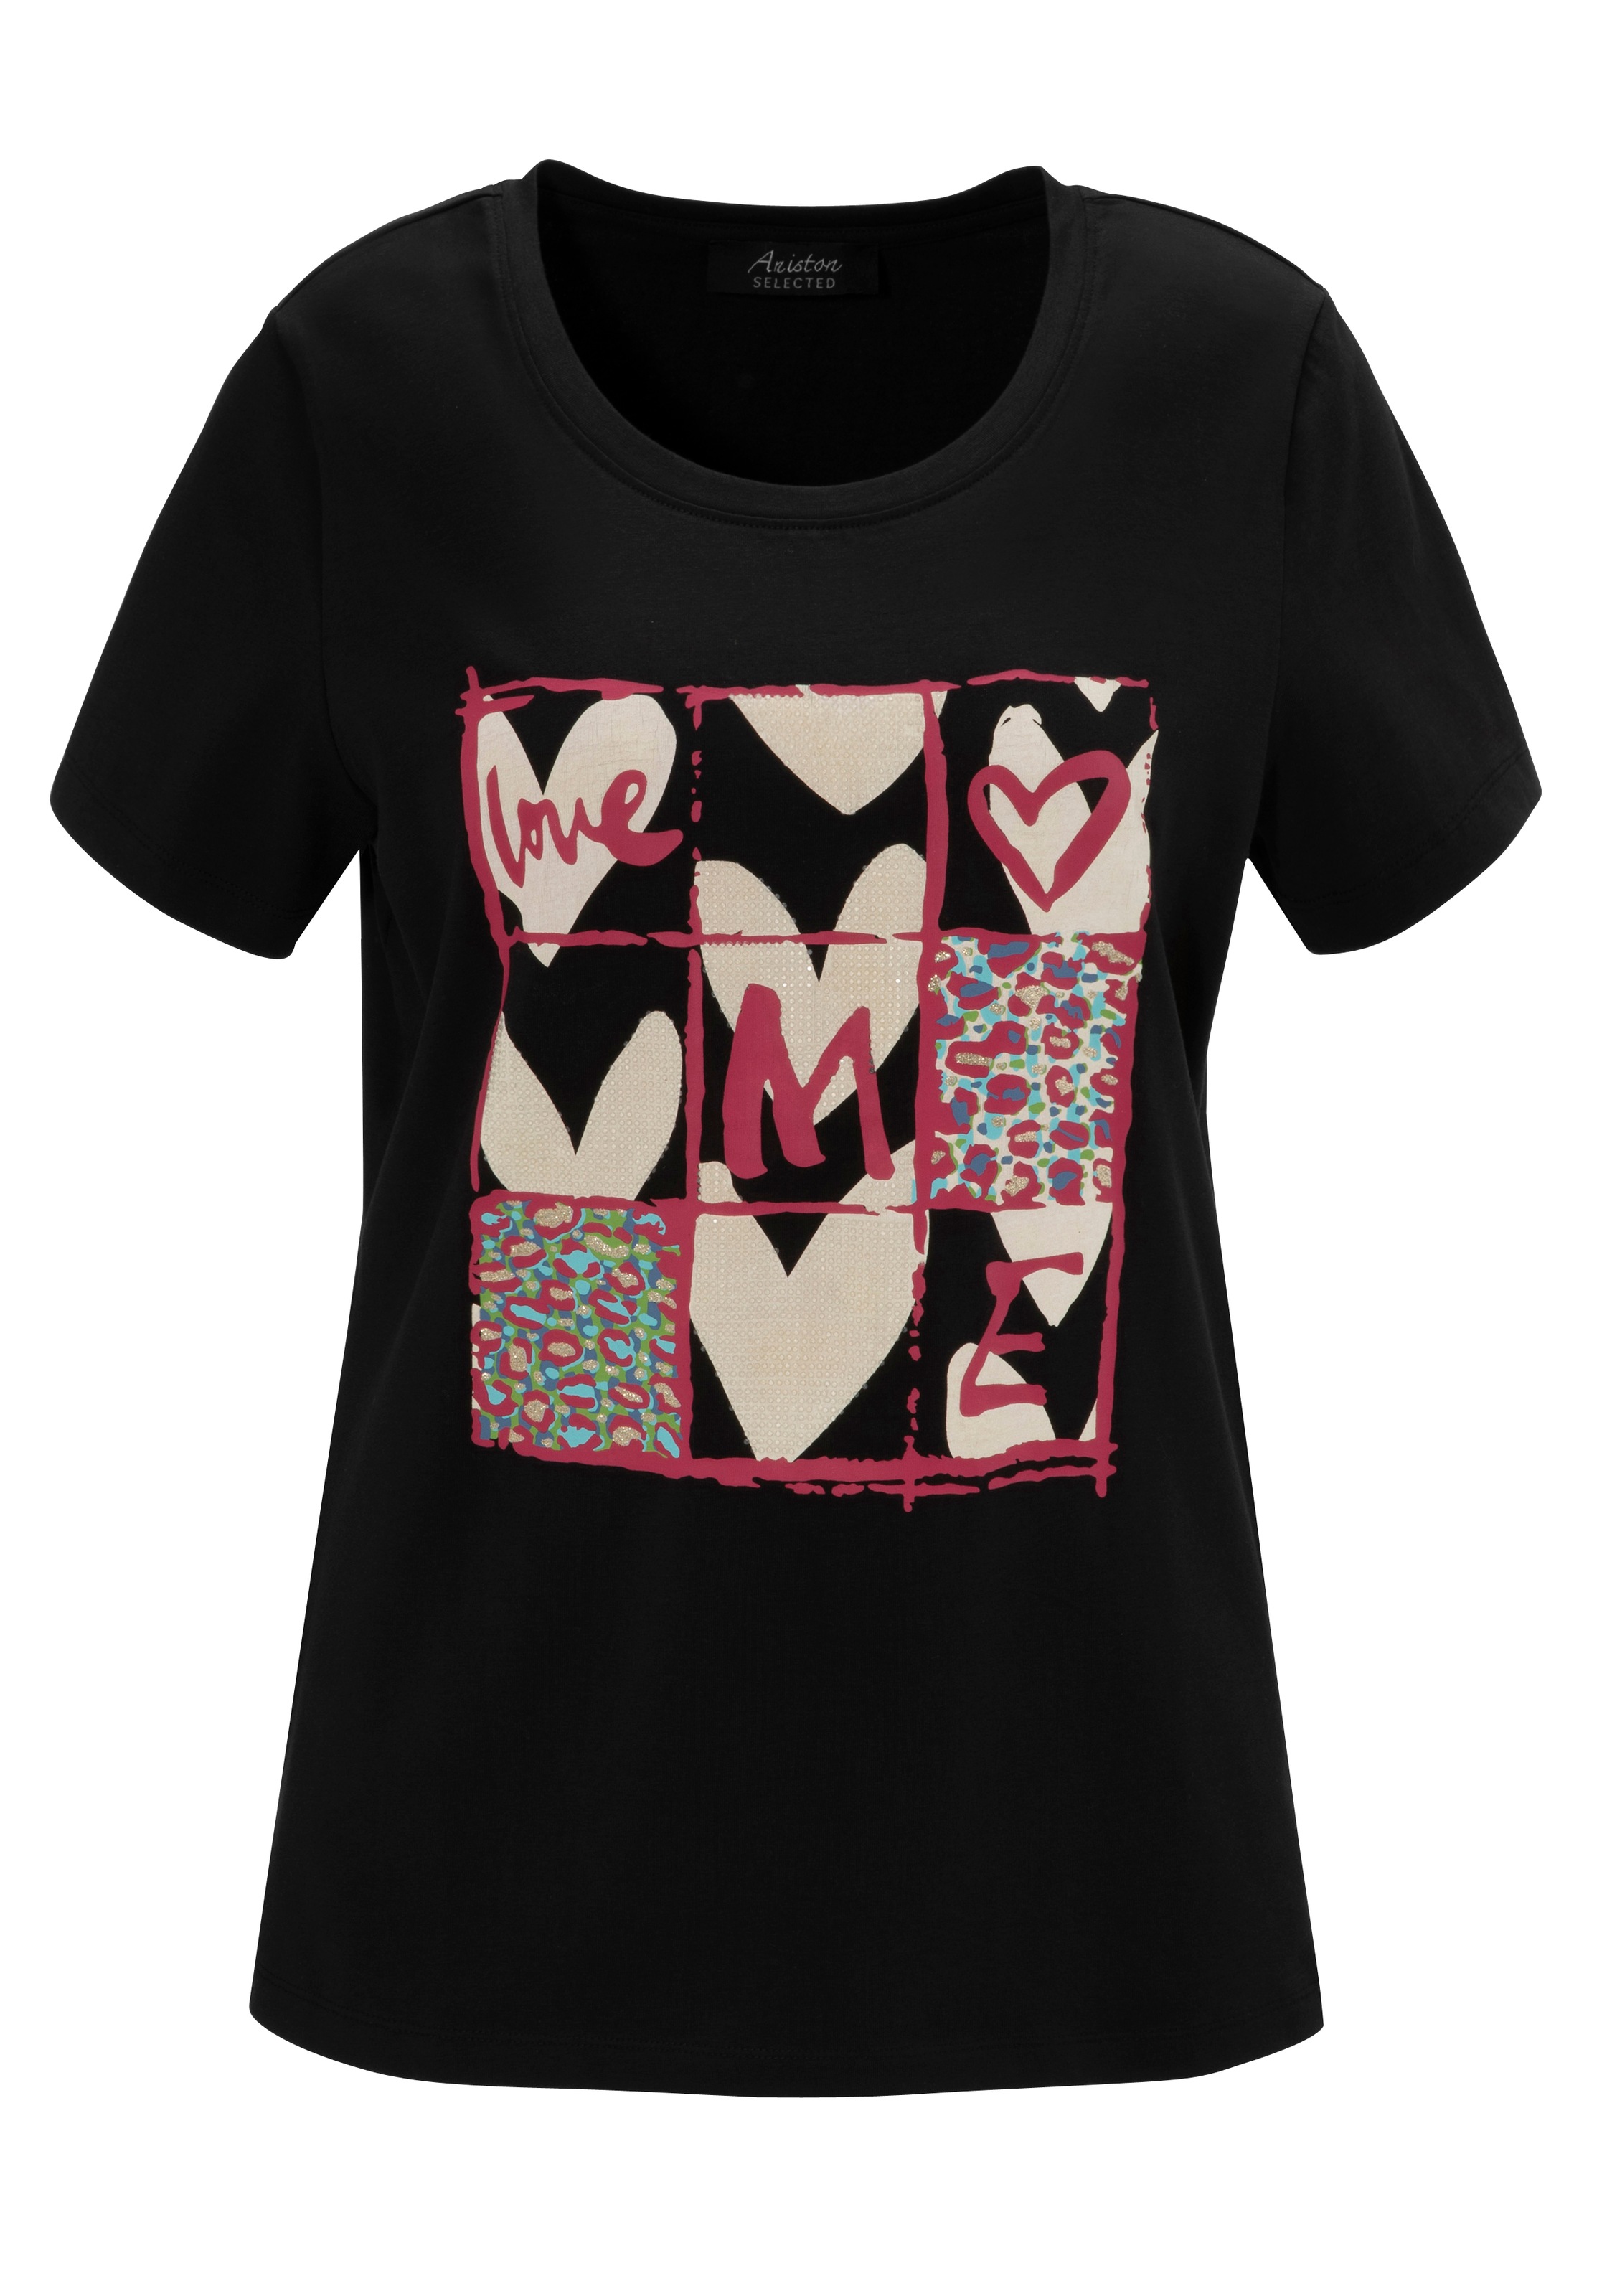 Aniston SELECTED T-Shirt, mit Herzdruck, Animal-Print und Glitzerdetails - NEUE KOLLEKTION